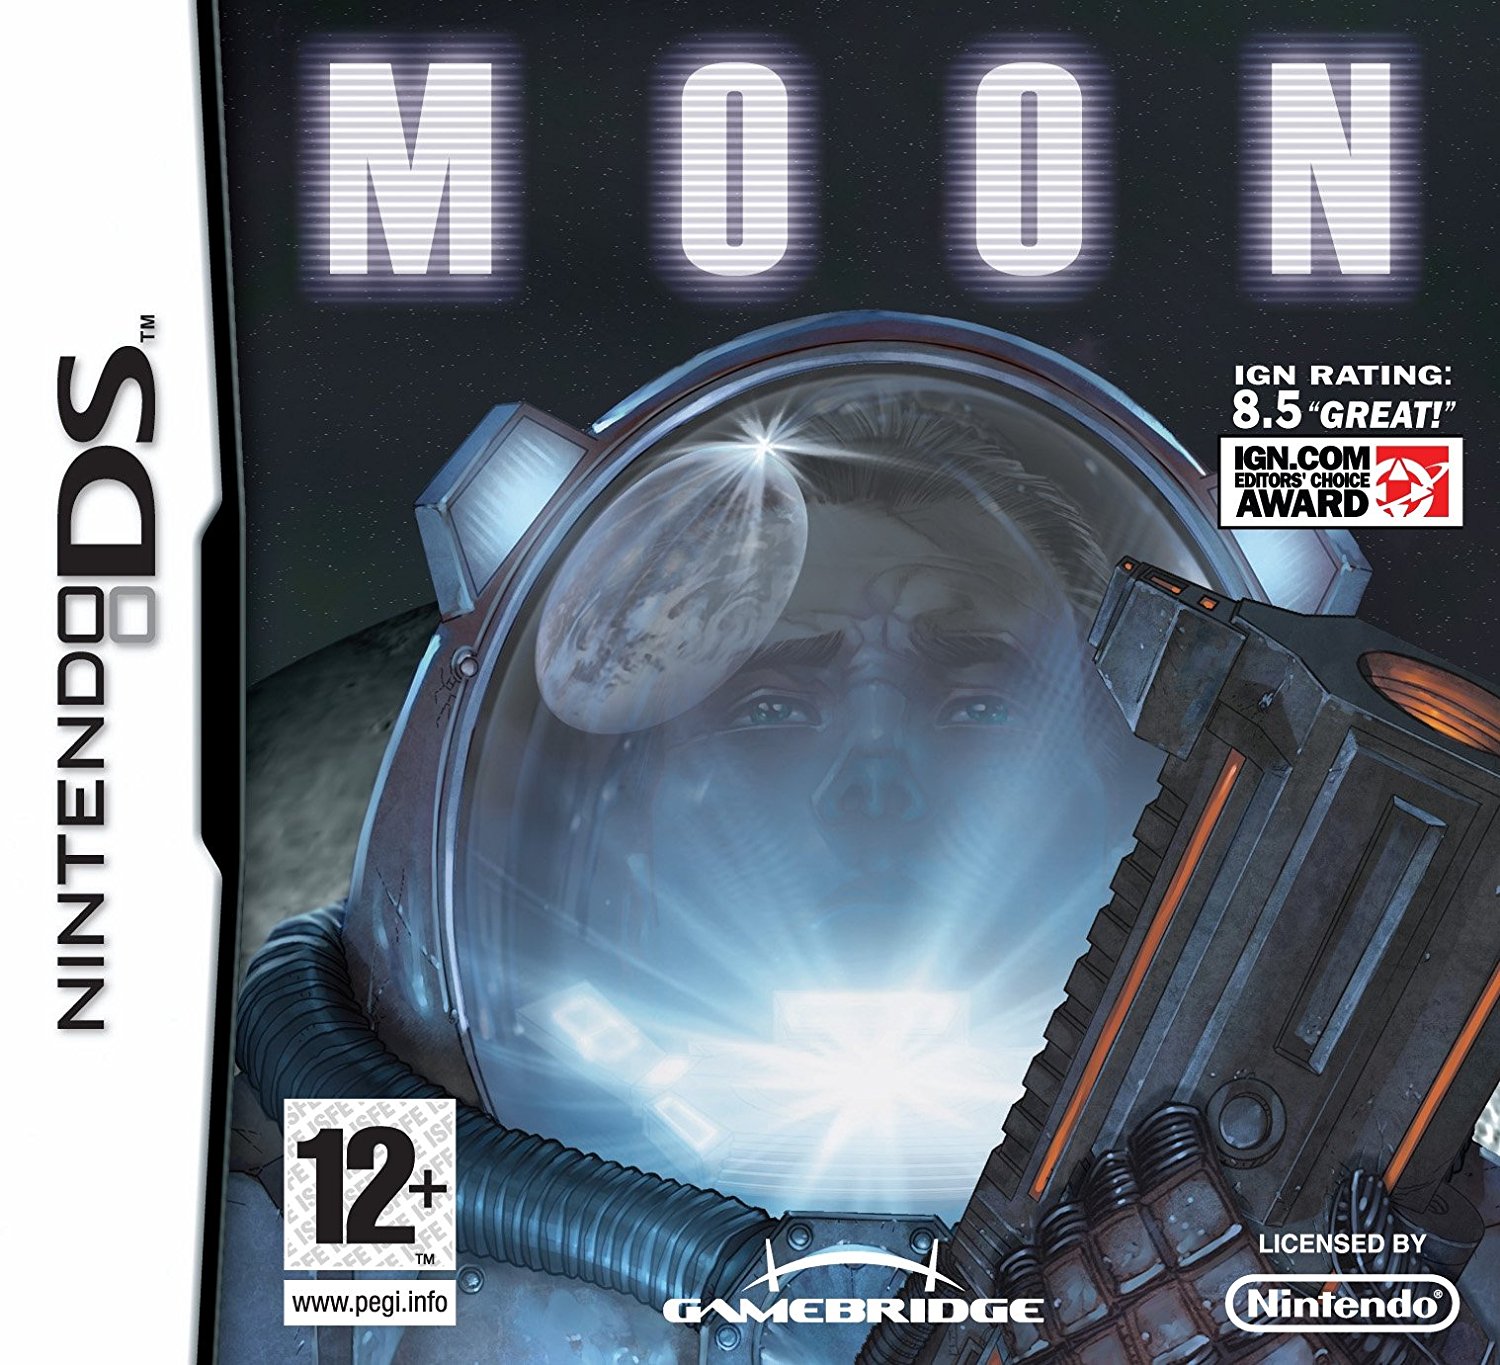 Moon Nintendo DS